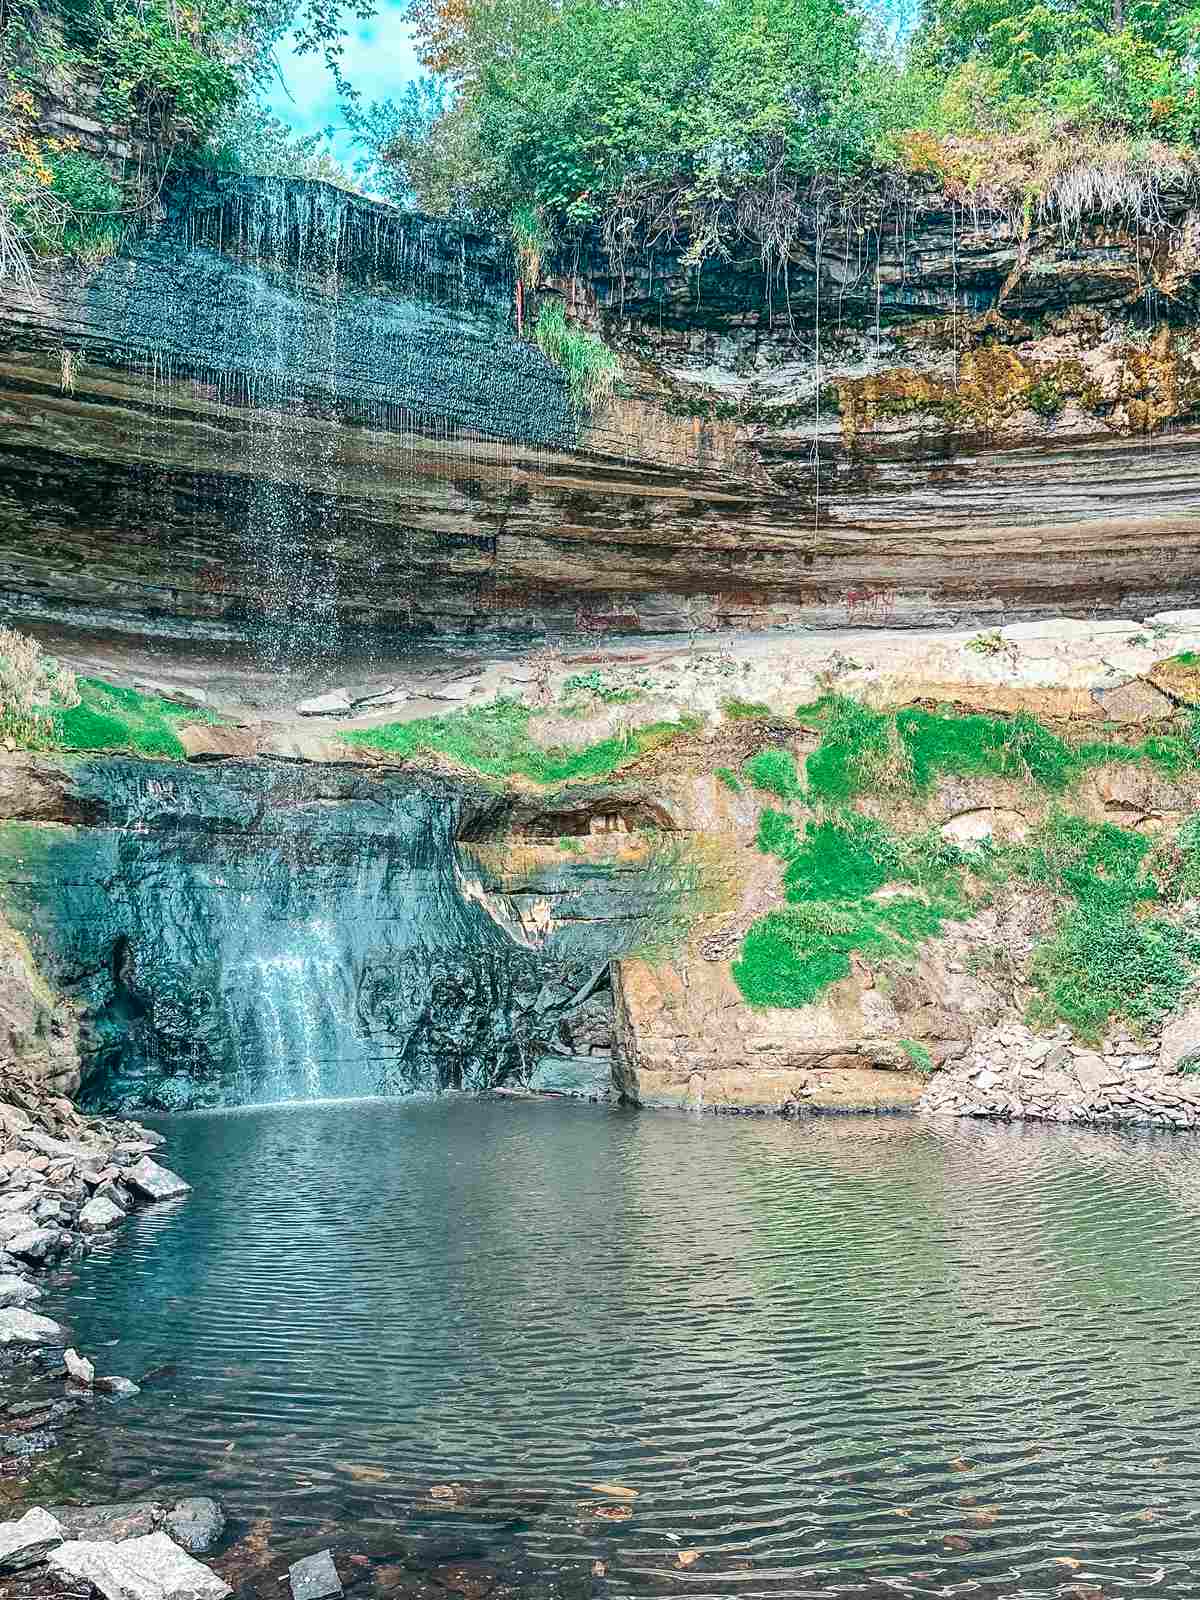 Minnehaha Falls in Minnesota